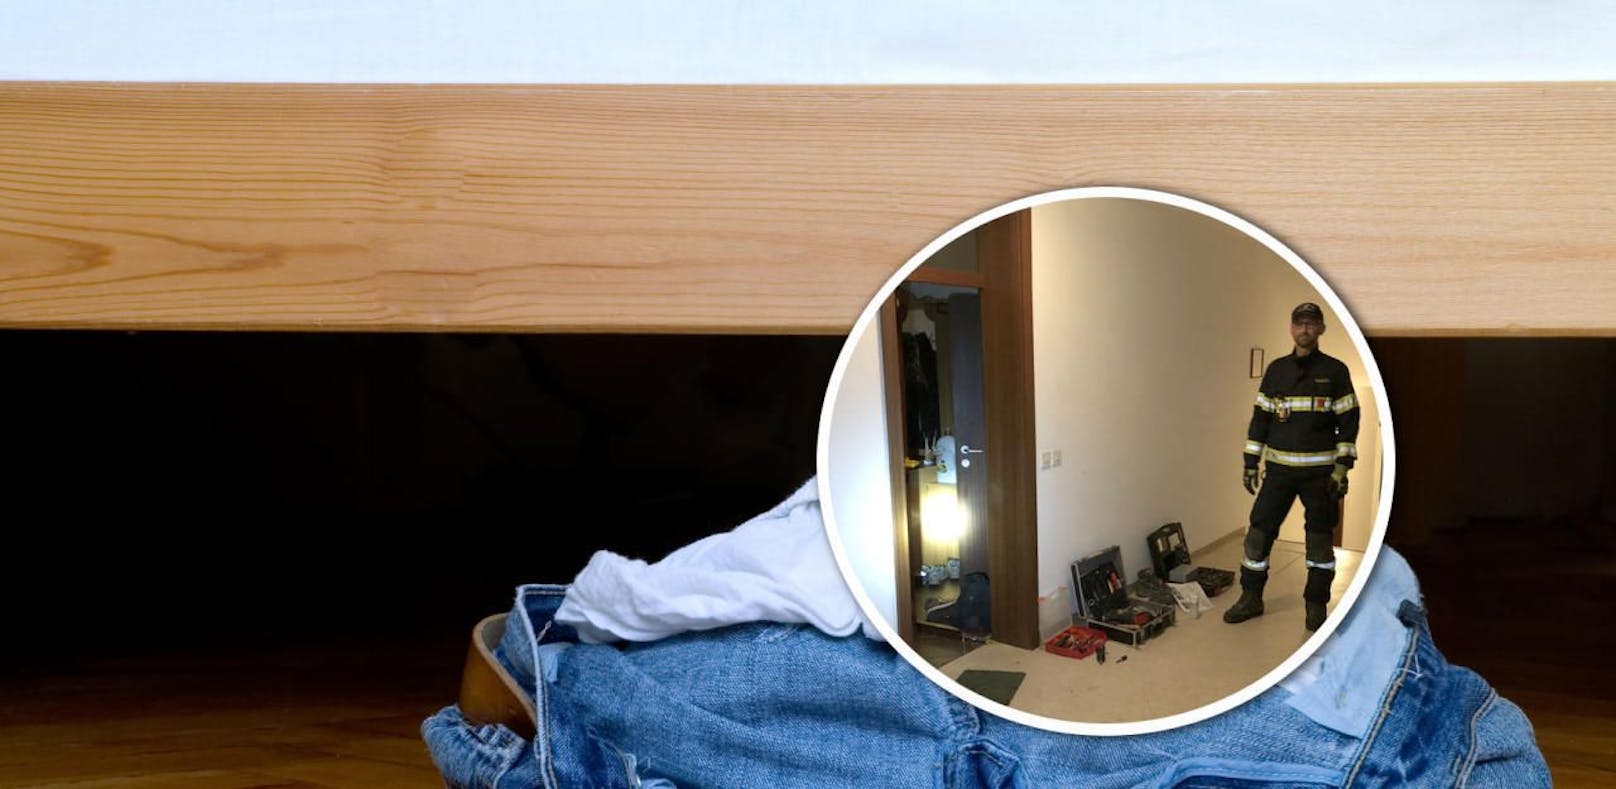 Alkolenker (25) versteckte sich unter Bett vor Polizei